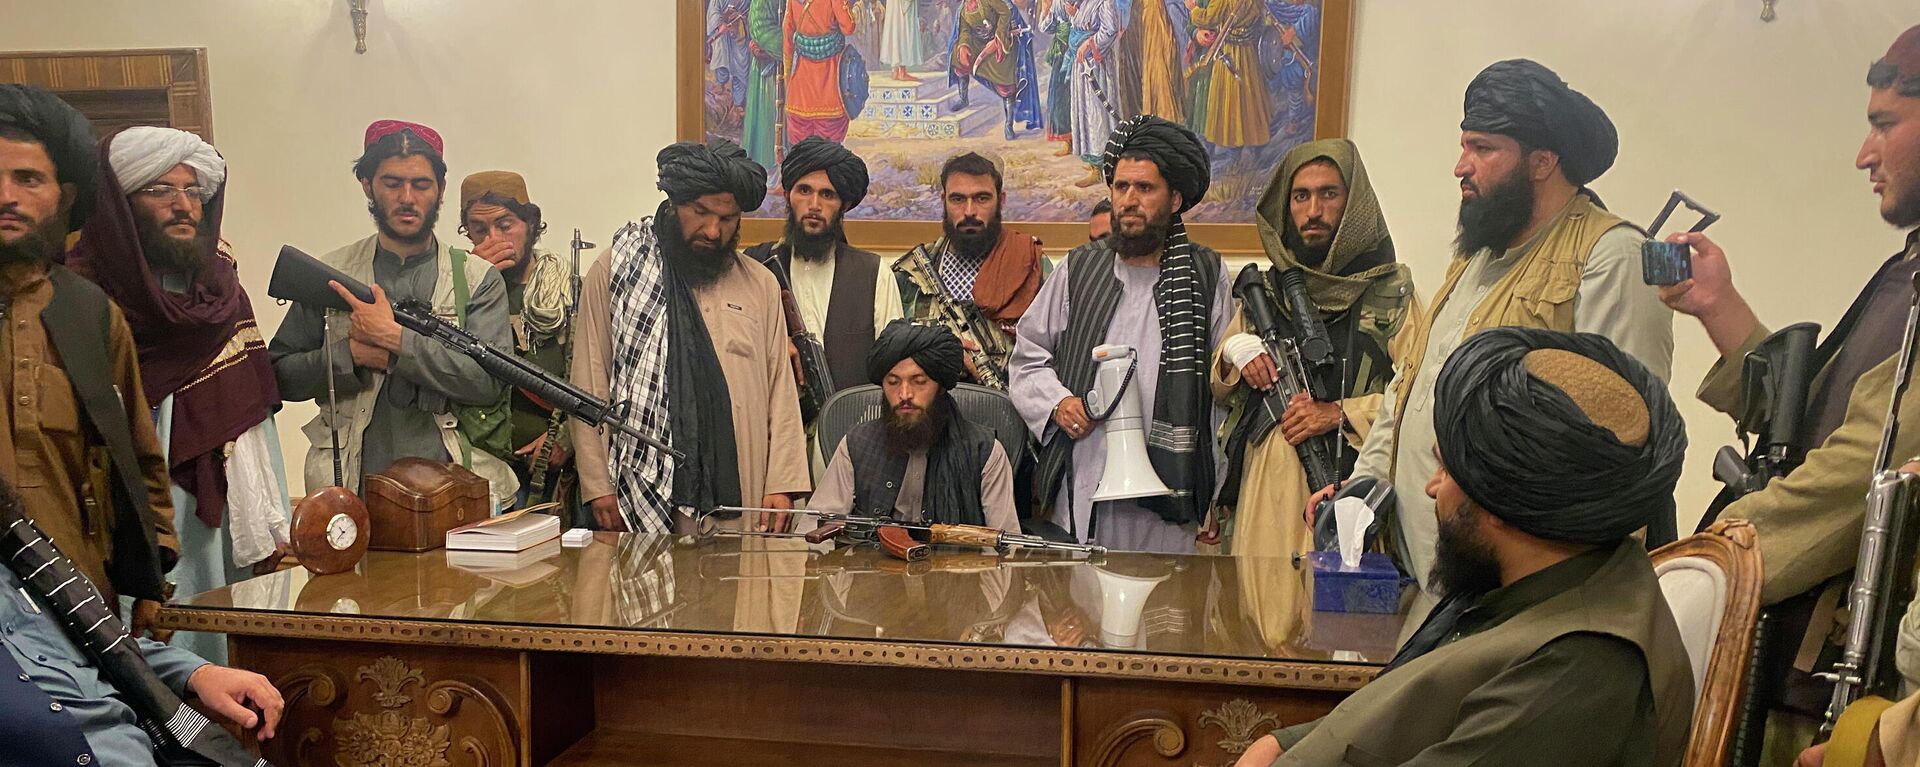 Боевики Талибана в президентском дворце в Кабуле, Афганистан - Sputnik Ўзбекистон, 1920, 22.09.2021